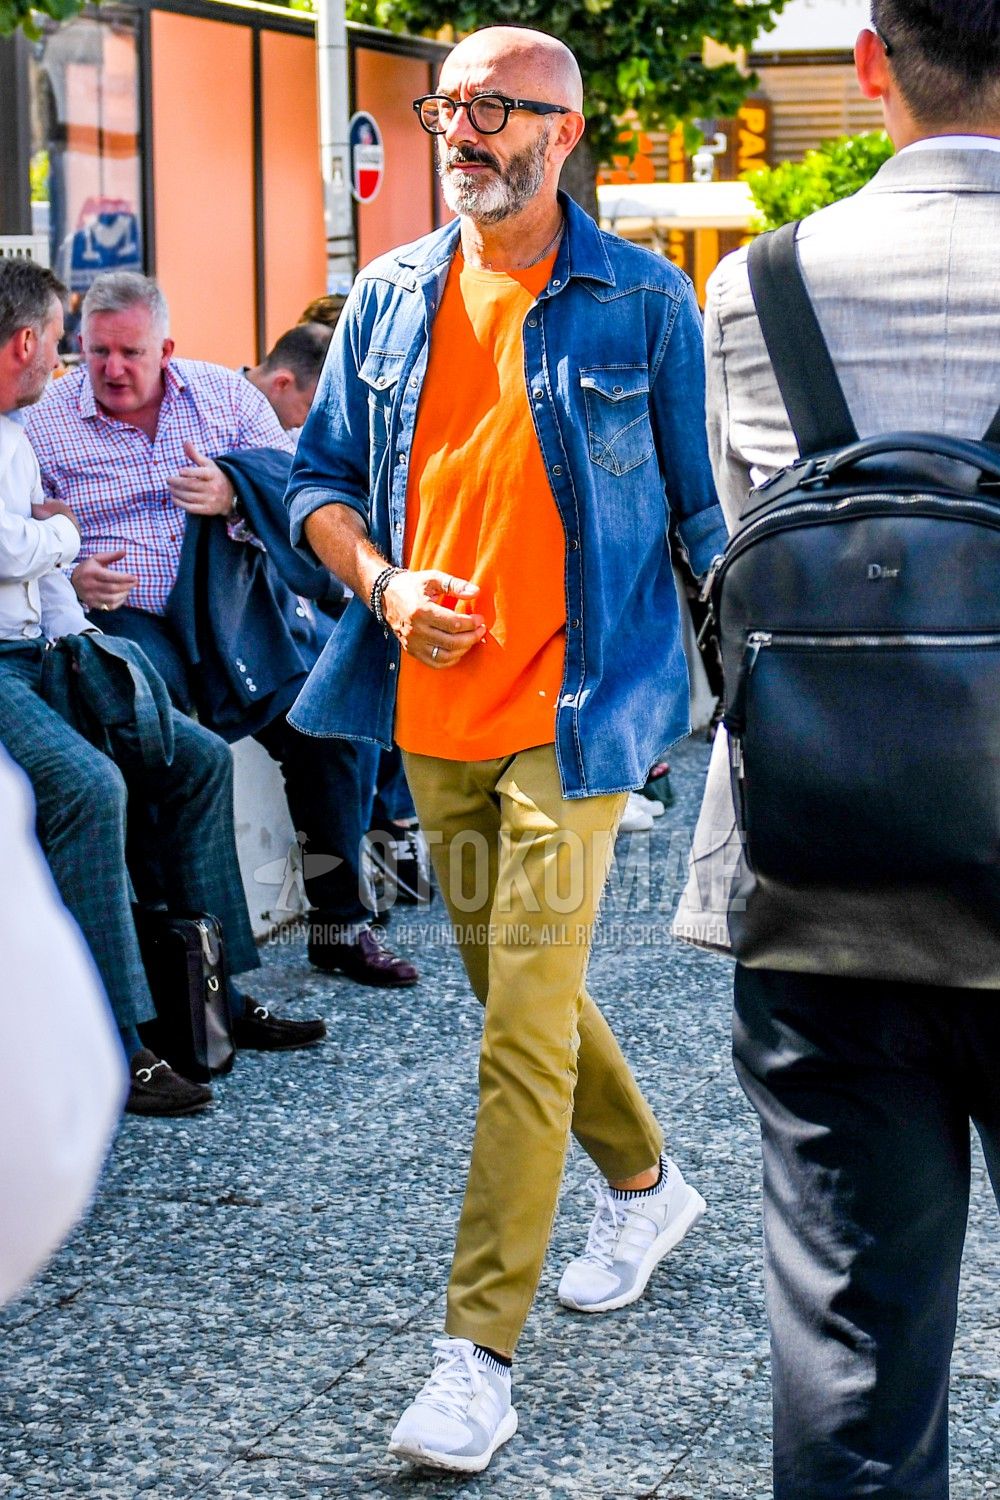 オレンジtシャツ コーデ特集 ビタミンカラーで明るい印象に仕上げたメンズの着こなし紹介 メンズファッションメディア Otokomae 男前研究所 ページ 3 ページ 3